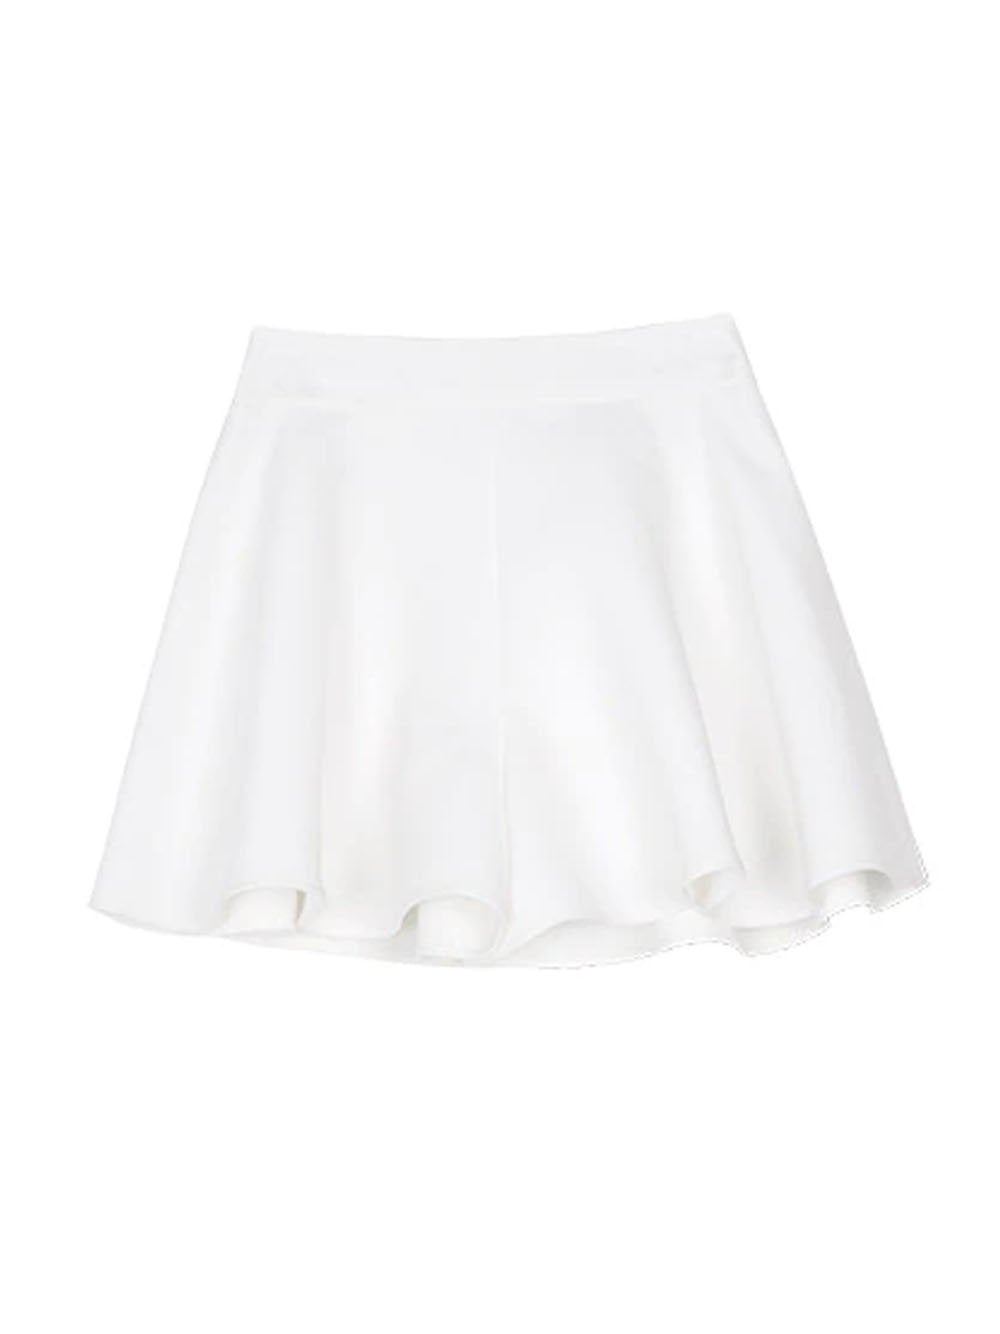 SARAI Top & Skirt Set